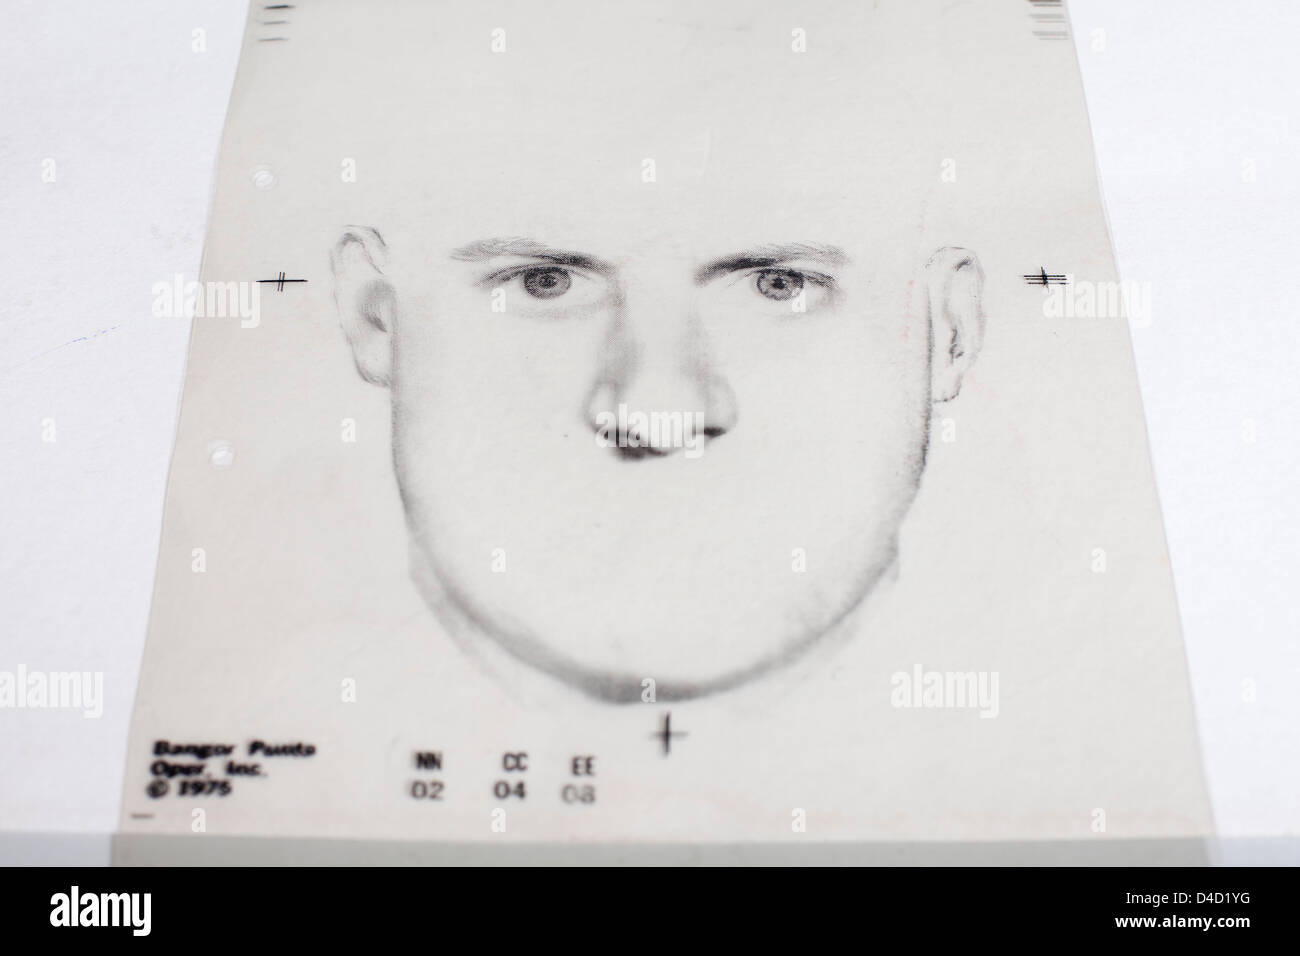 Gesichts Komposit hergestellt aus austauschbaren Vorlagen der separaten Gesichtszüge. Stockfoto